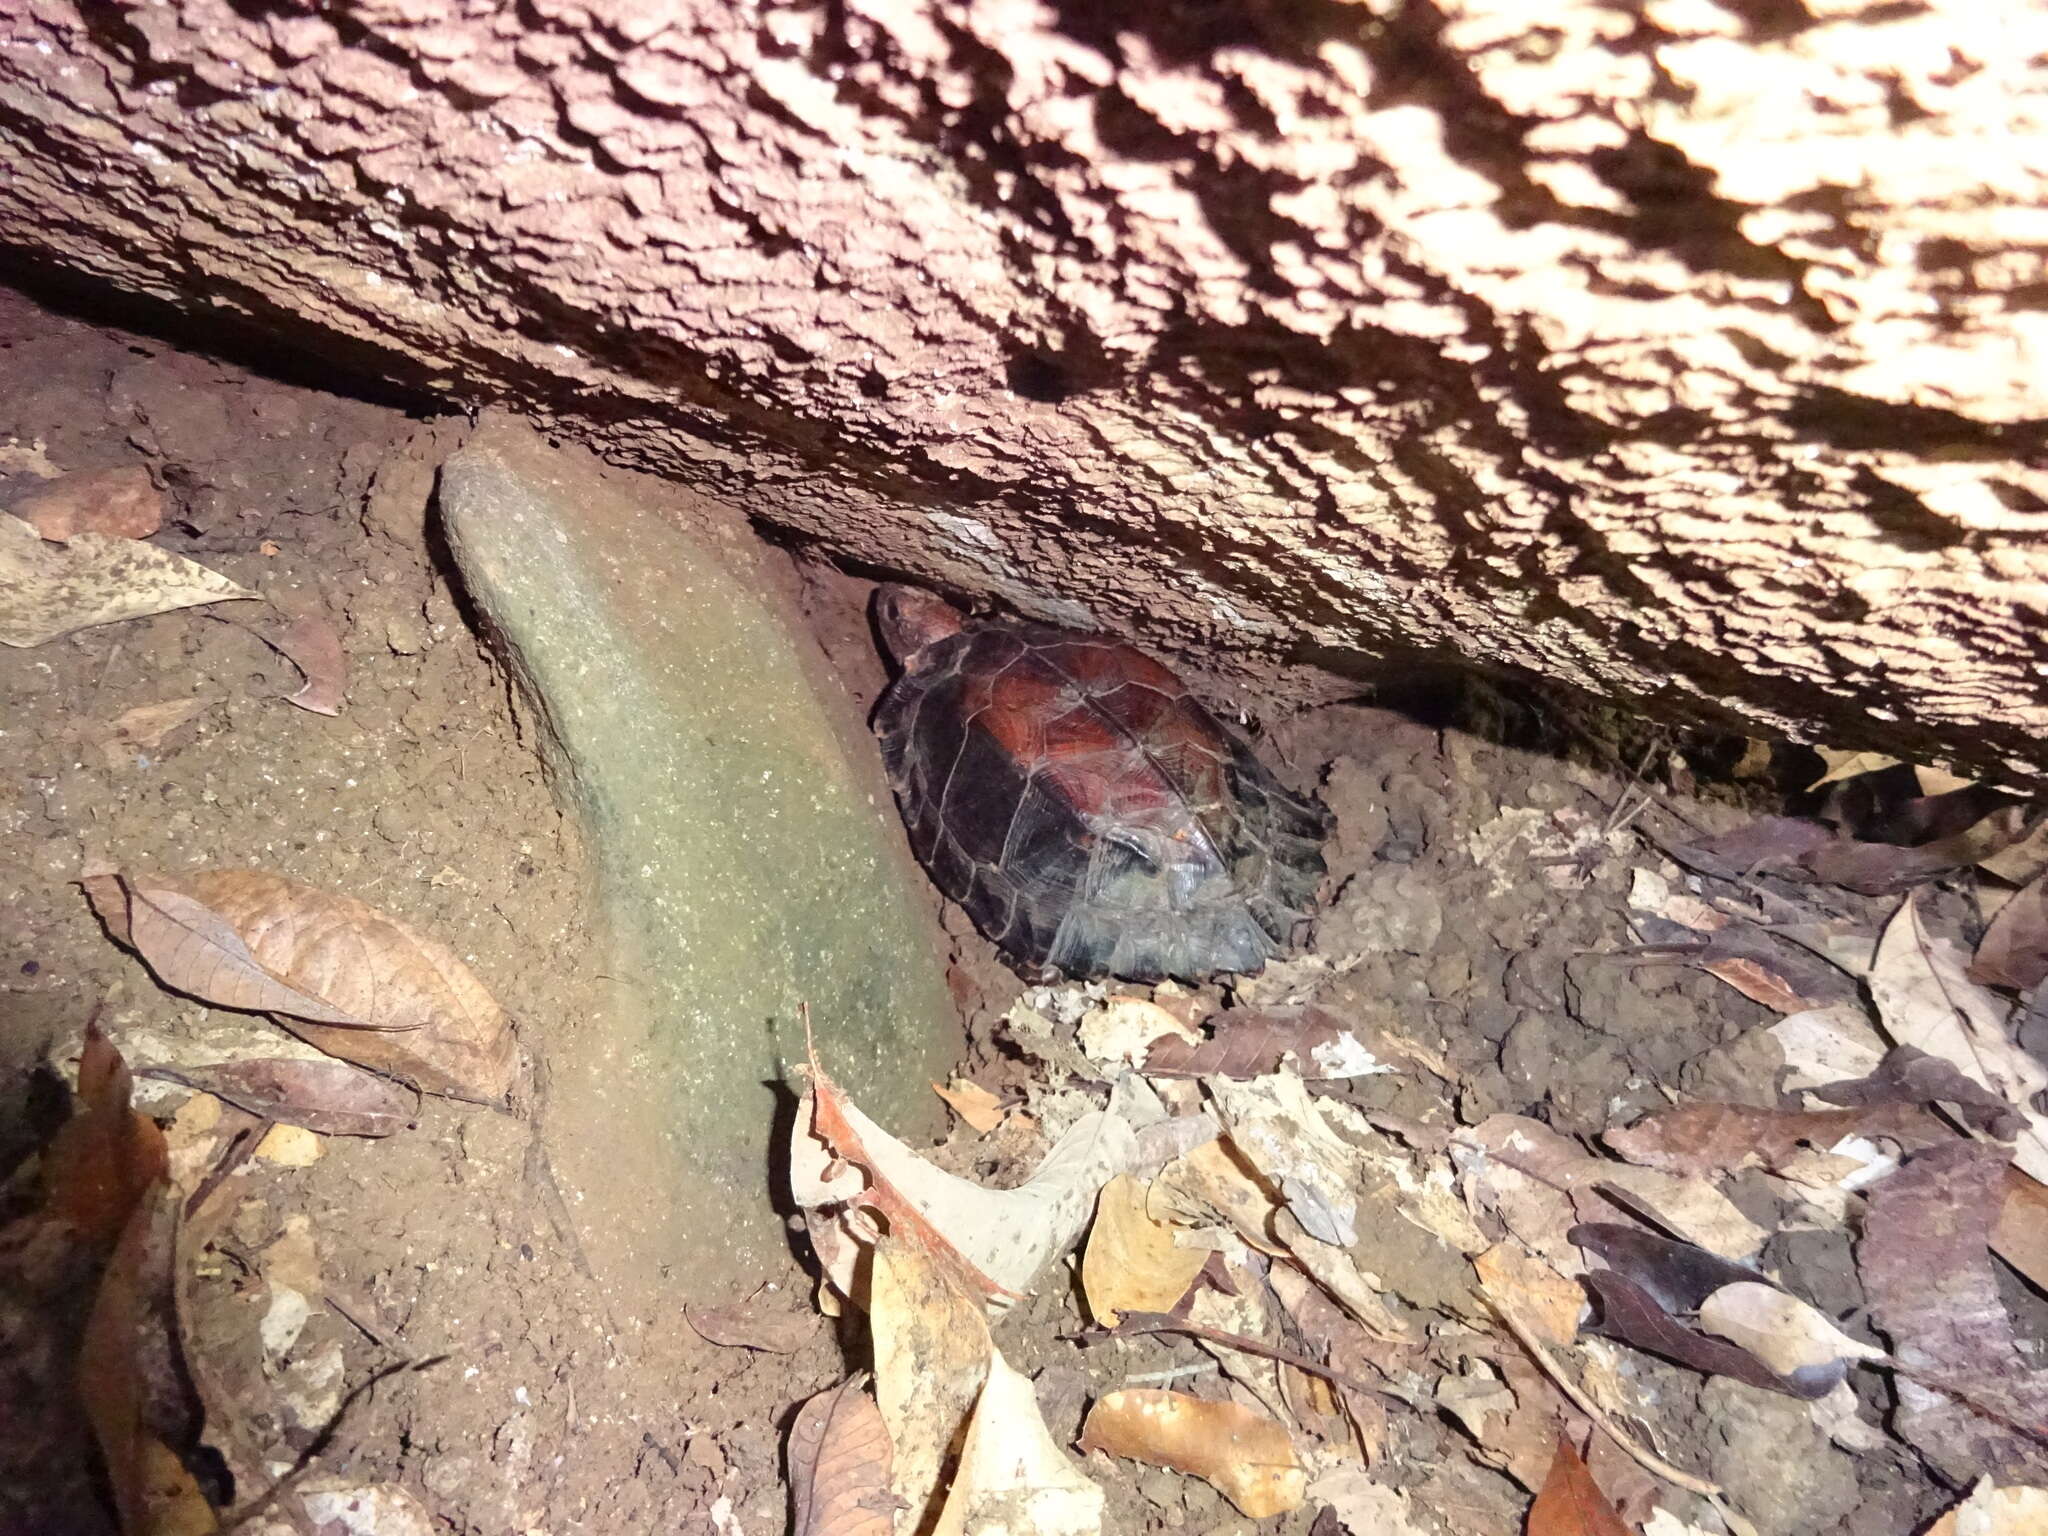 Image of Keeled box turtle